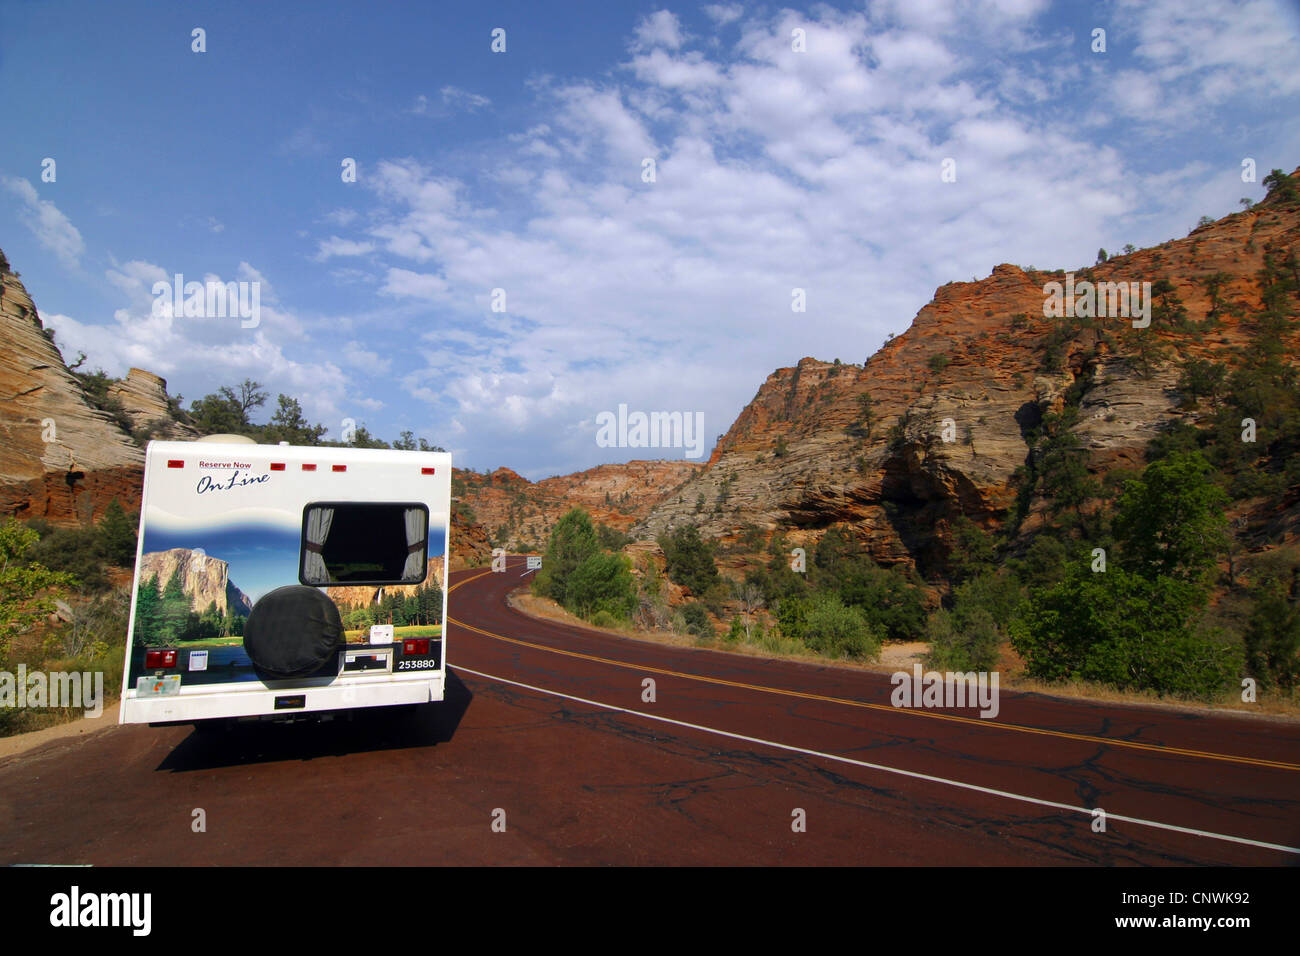 Motor Caravan avec une photo de paysage idyllique rock debout à une route à travers l'environnement similaire, USA, Utah, Zion National Park Banque D'Images